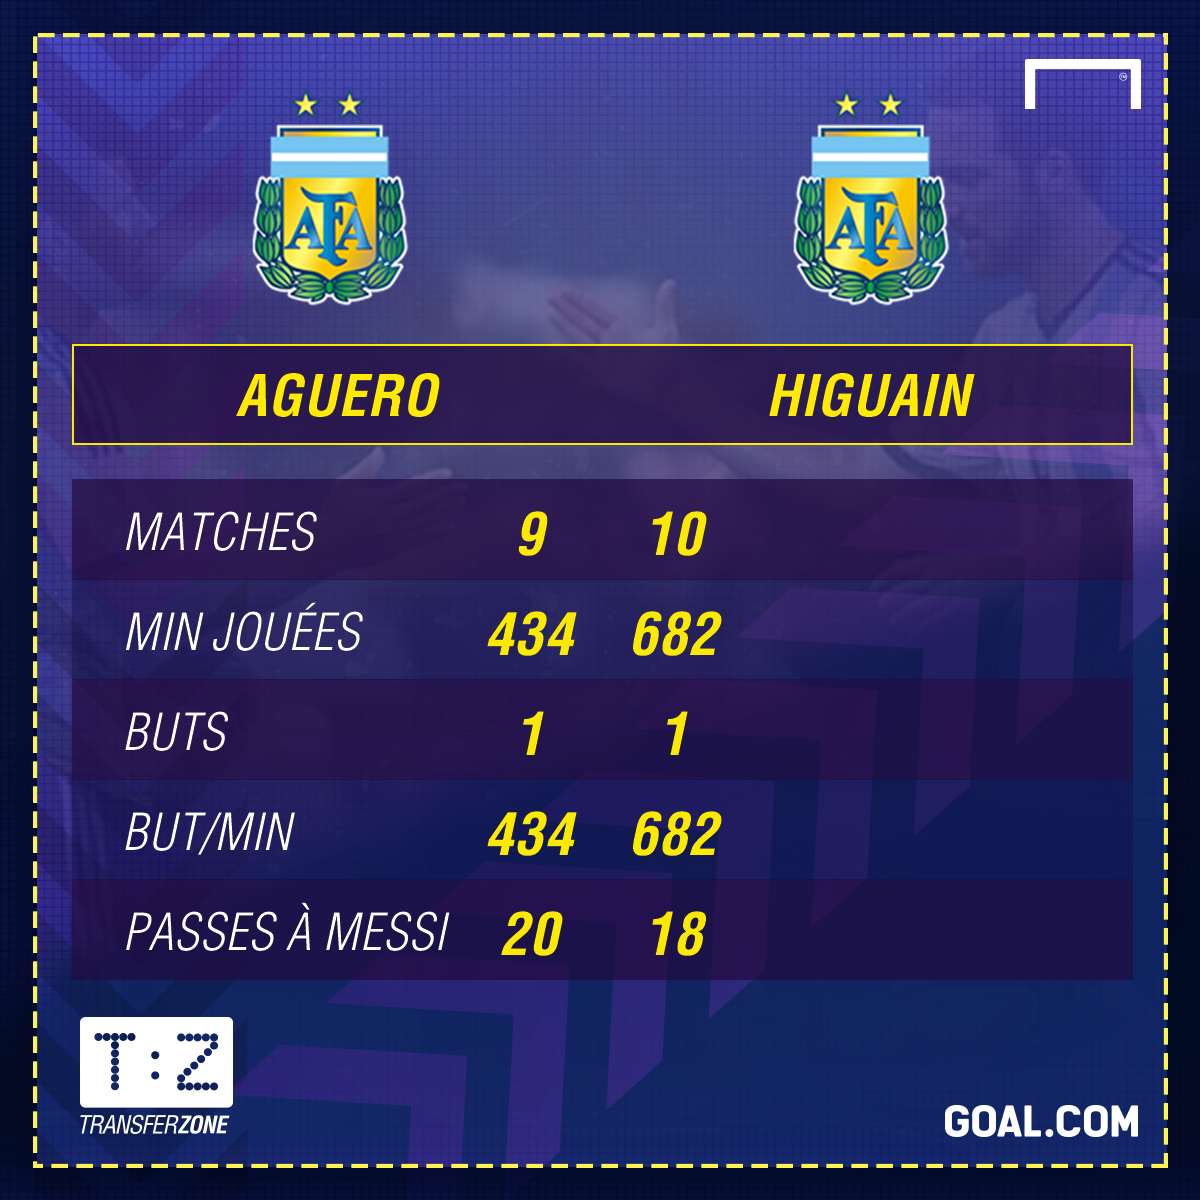 Aguero vs Higuain